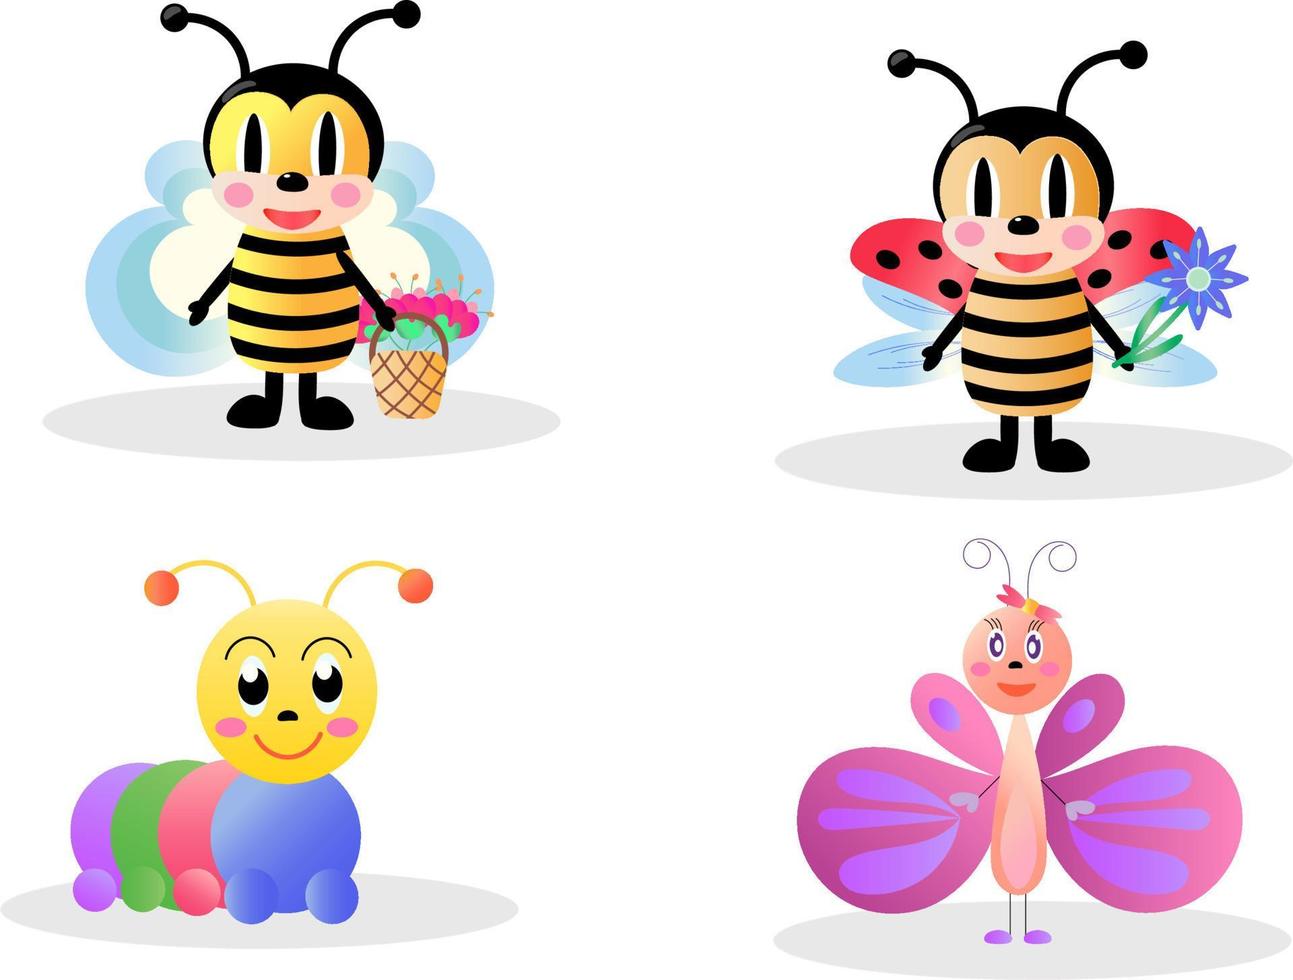 impostare simpatici insetti. illustrazione vettoriale luminosa in stile cartone animato. farfalla, ape, bruco, coccinella.